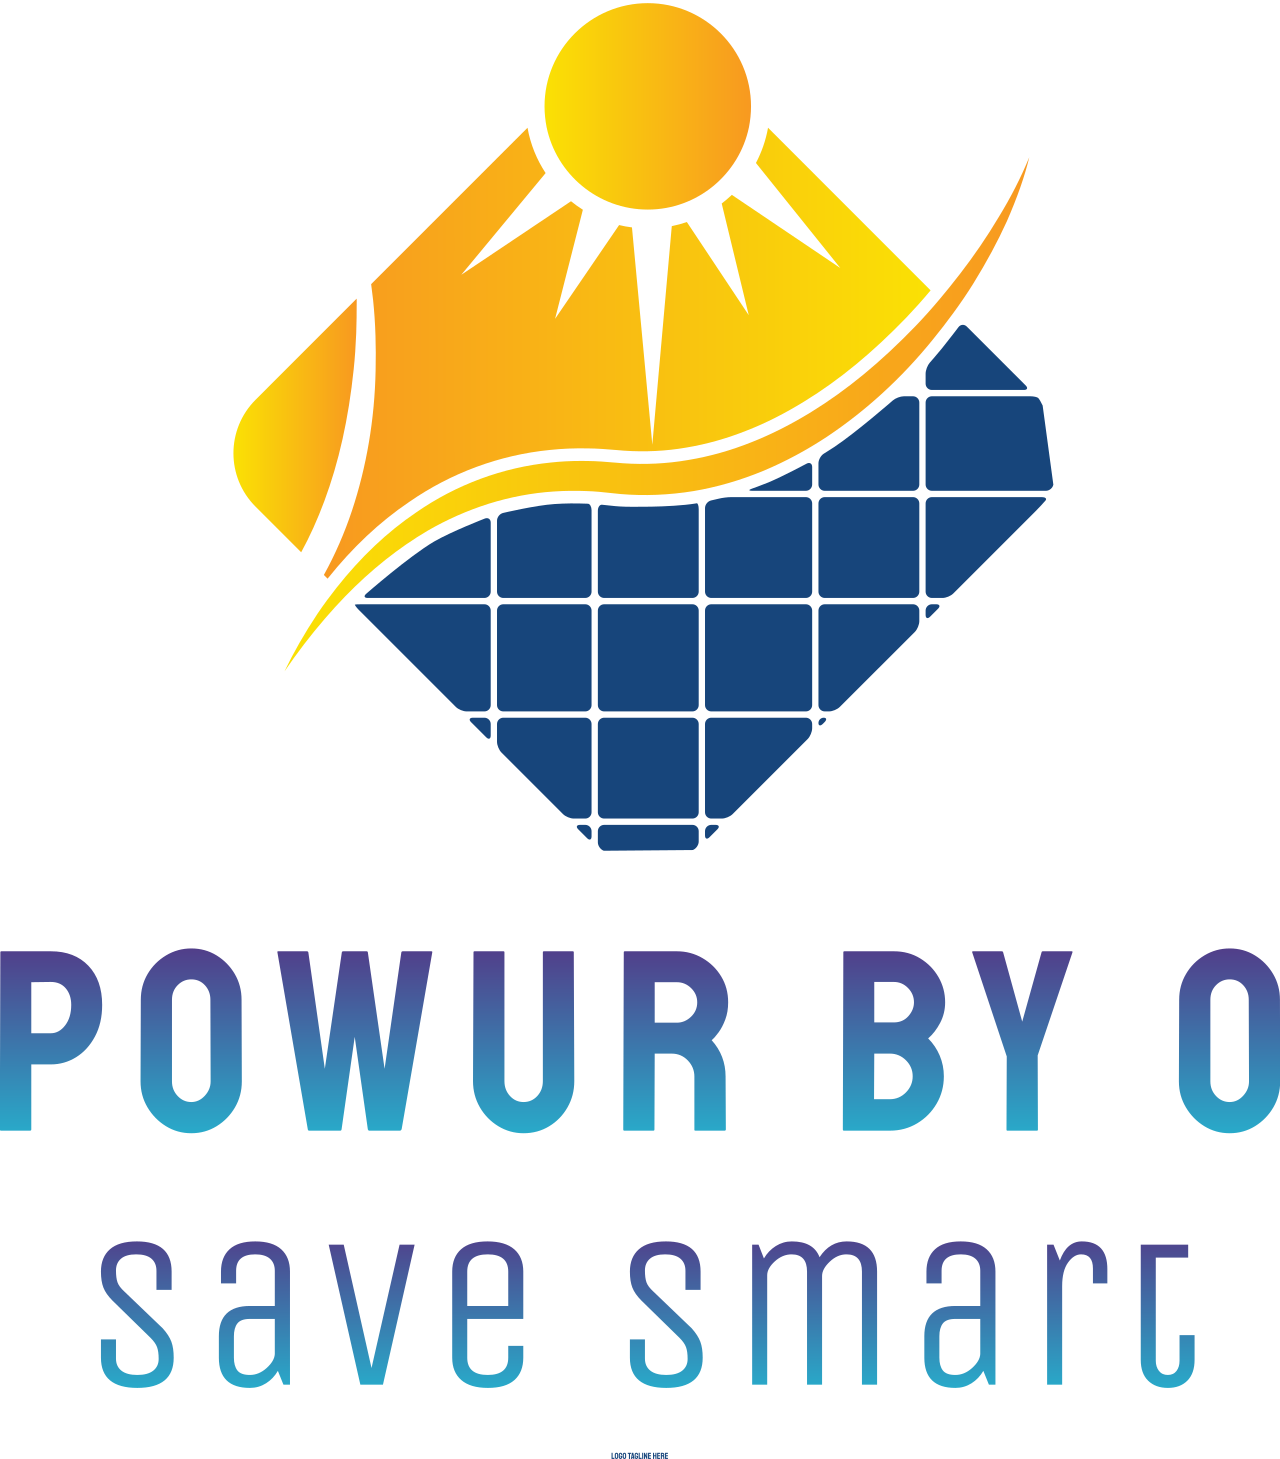 Powur by O's logo